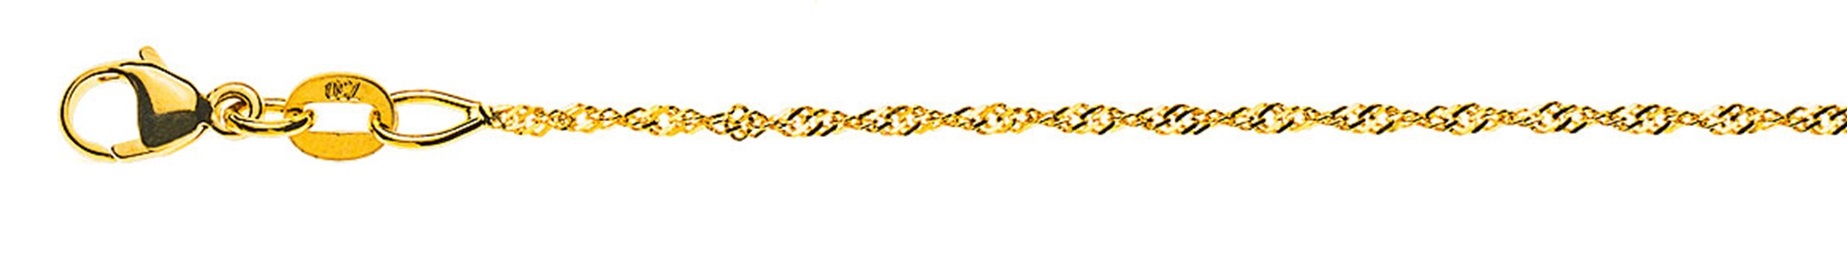 AURONOS Prestige Halskette Gelbgold 18K Singapurkette 60cm 1.2mm